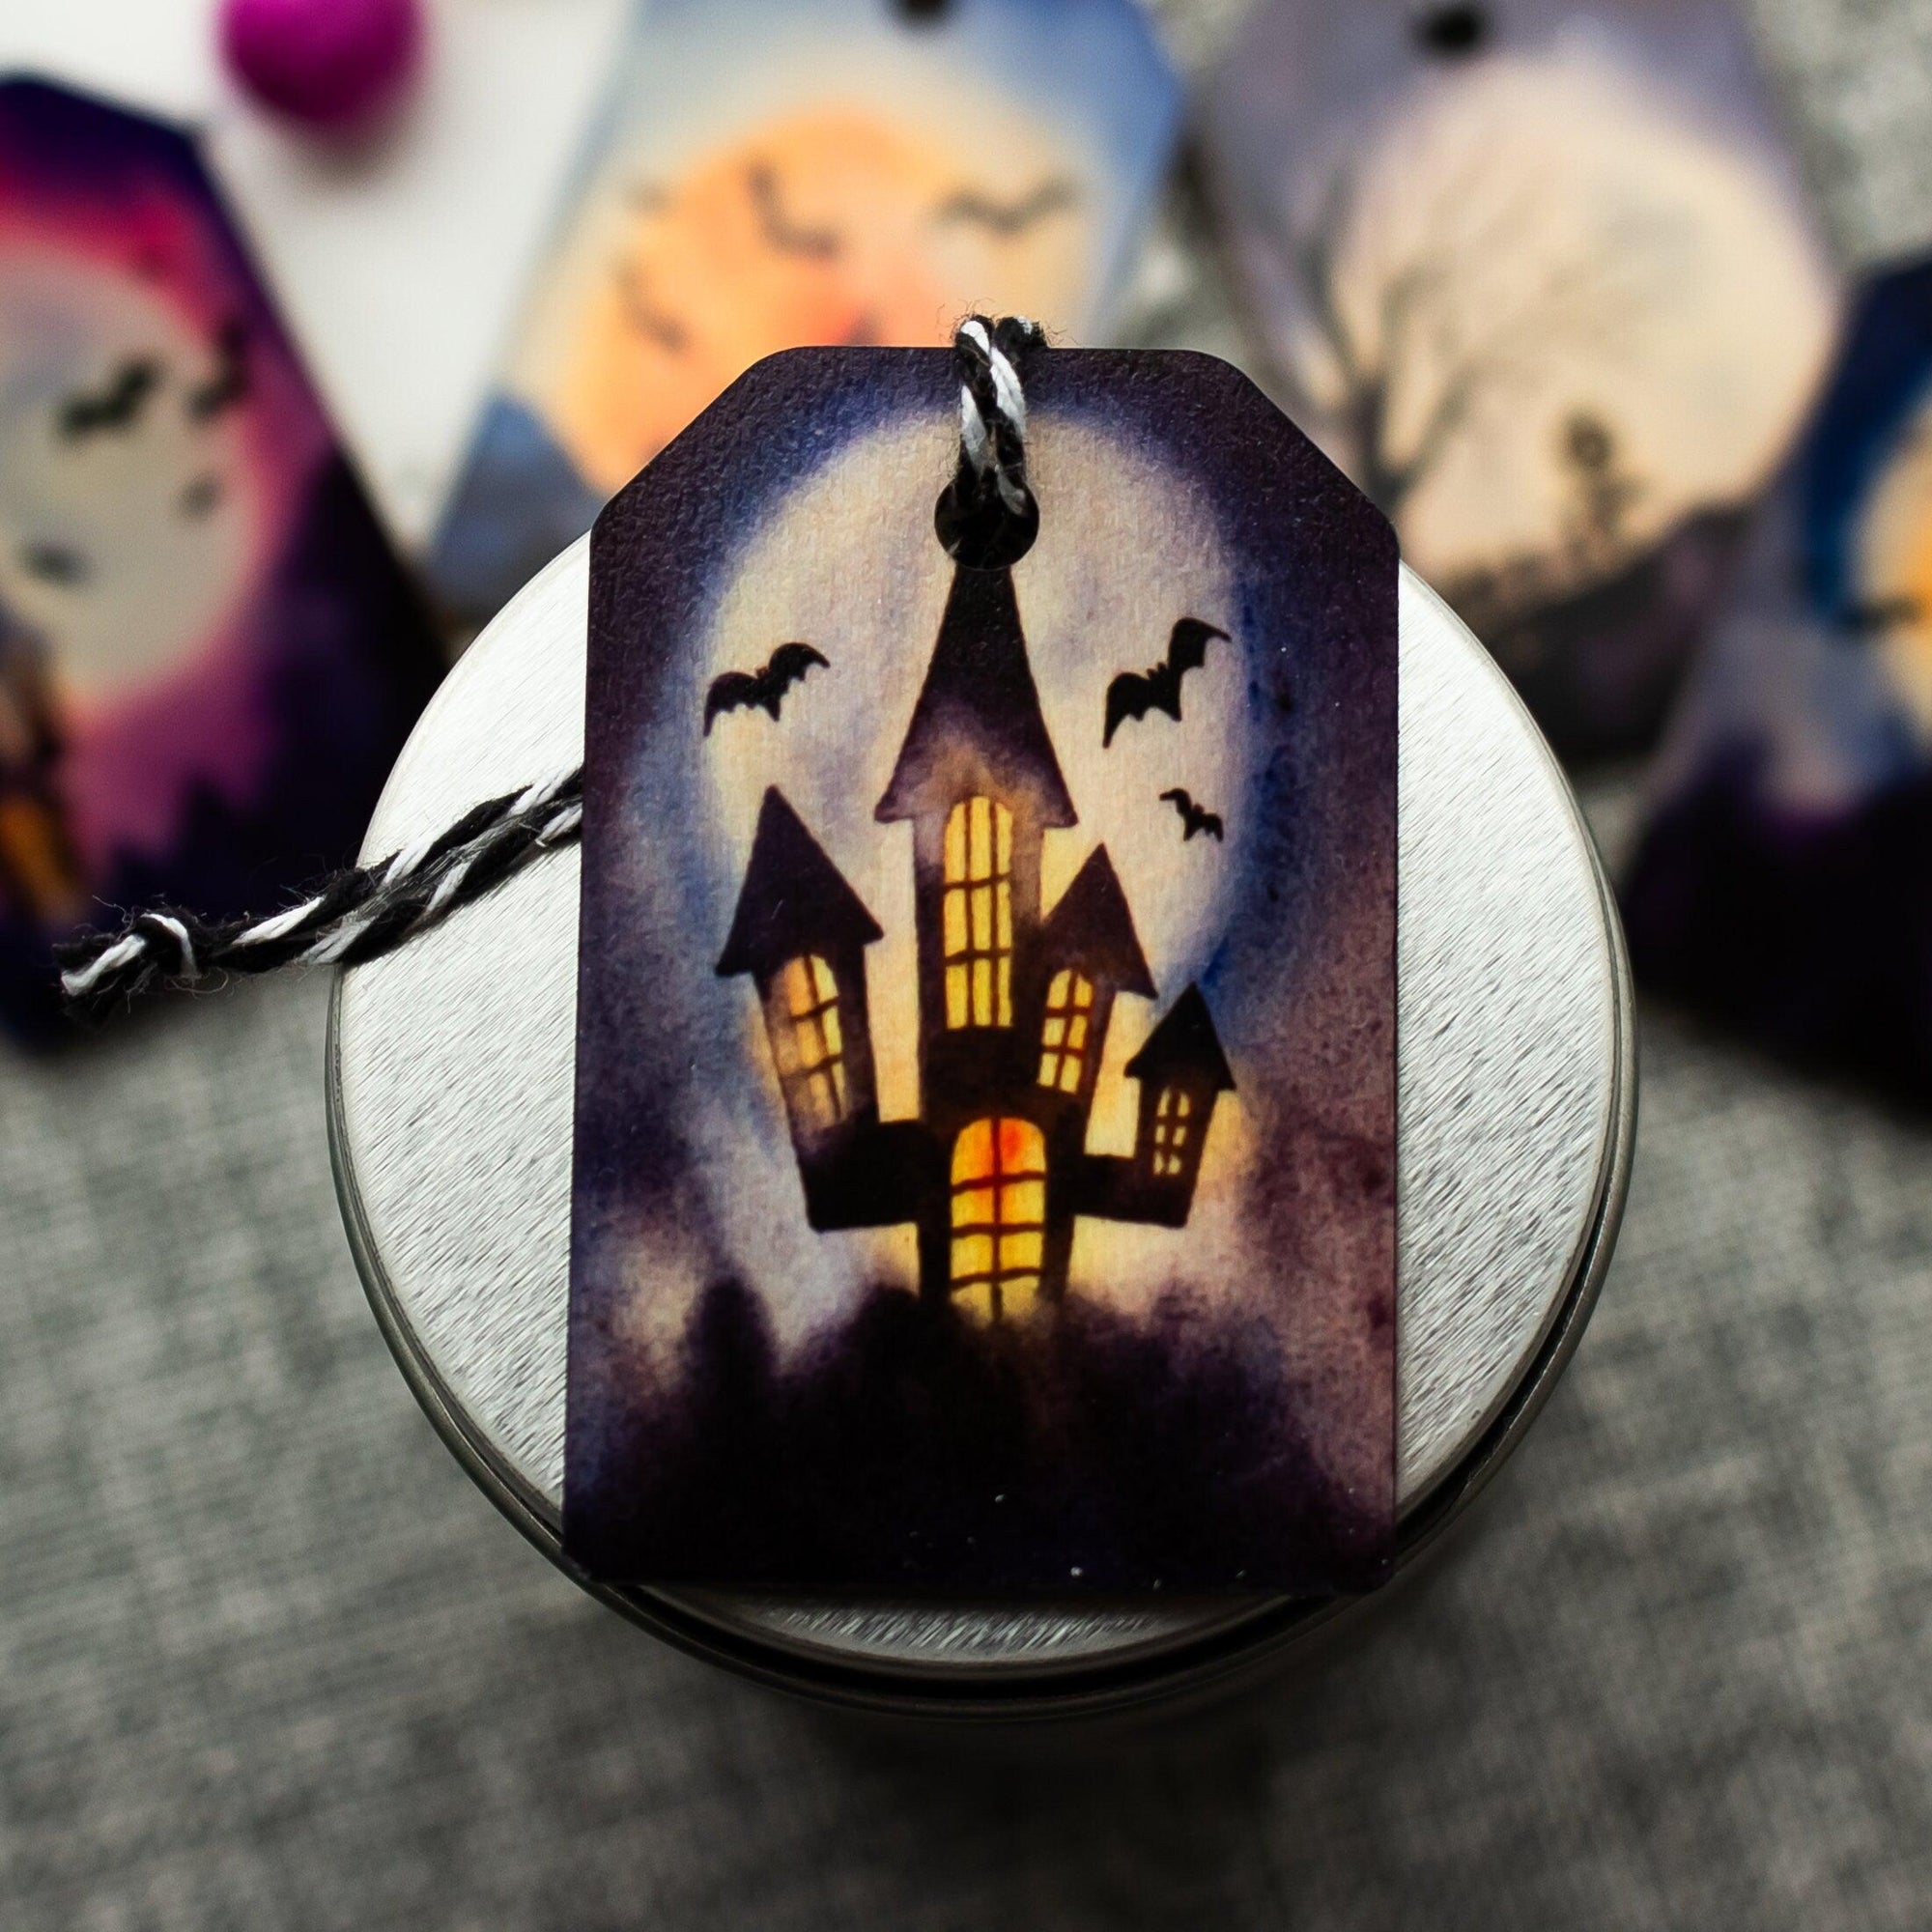 Spooky Halloween Tree Ornaments - Fright Night Ornaments for Miniature Halloween Tree - Set of Five - Fall Decor